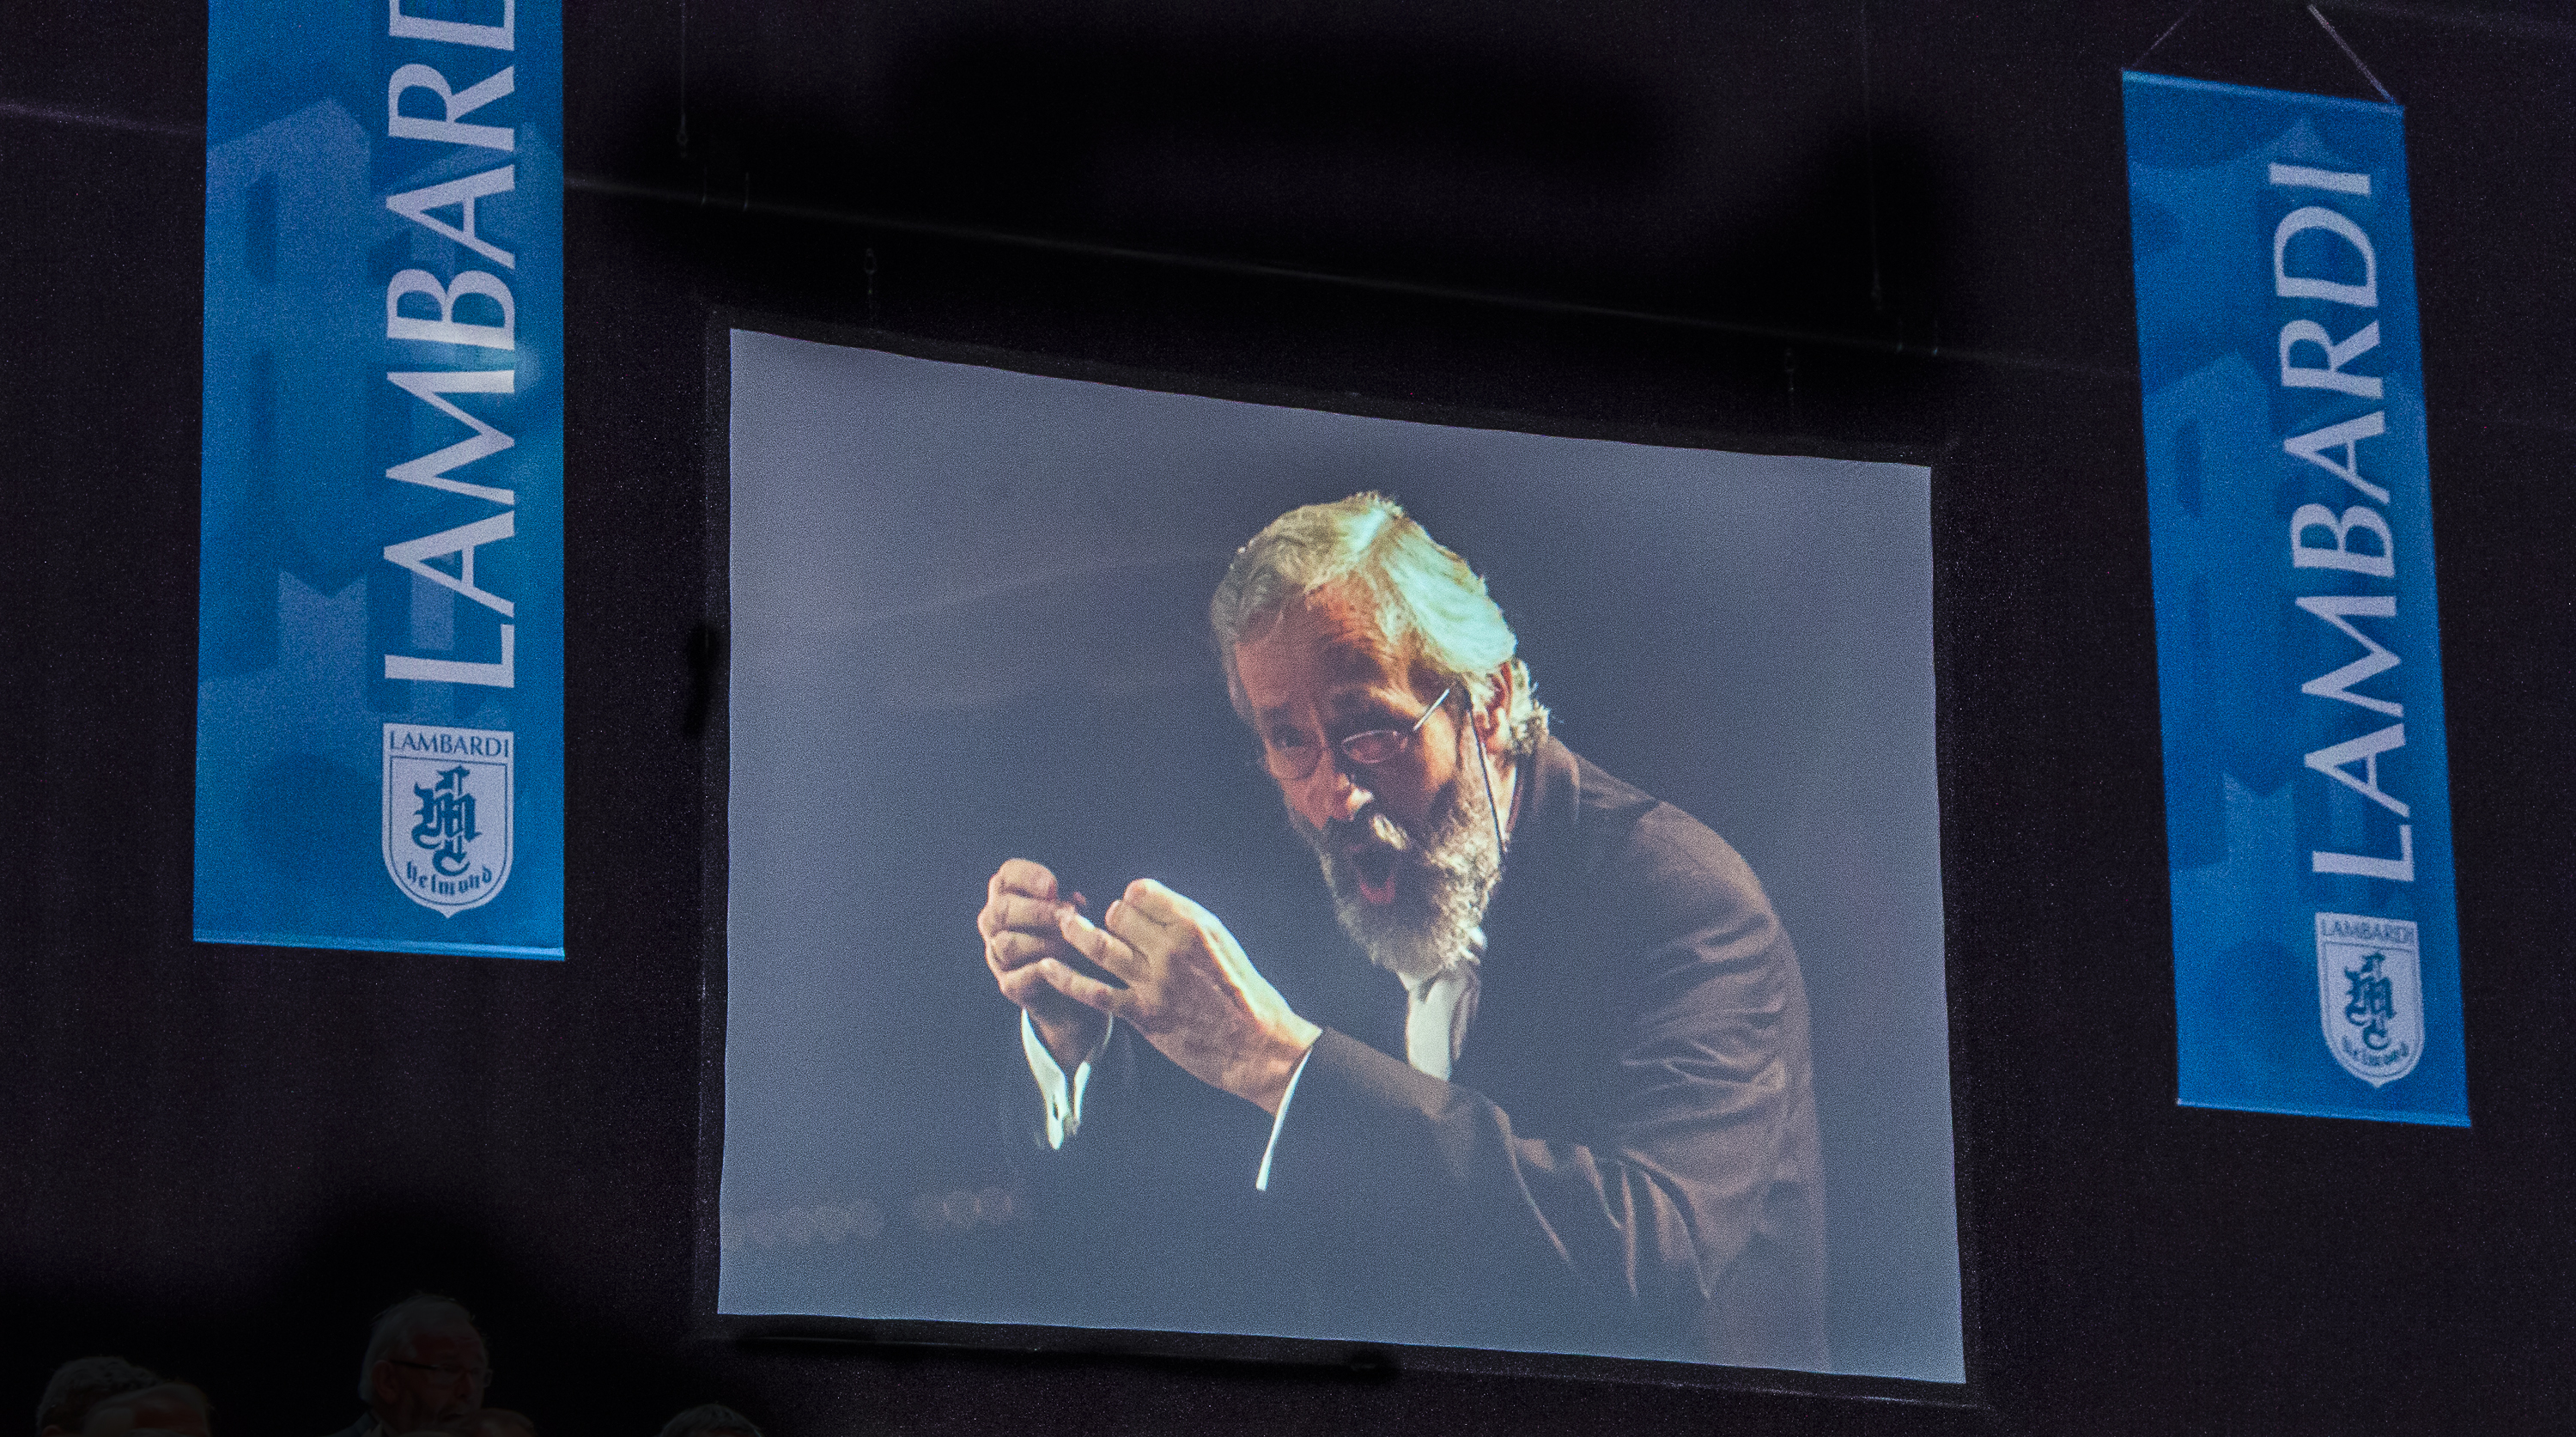 Lambardi Mannenkoor, afscheidsconcert Dirigent Ton Slegers op 20 oktober 2013